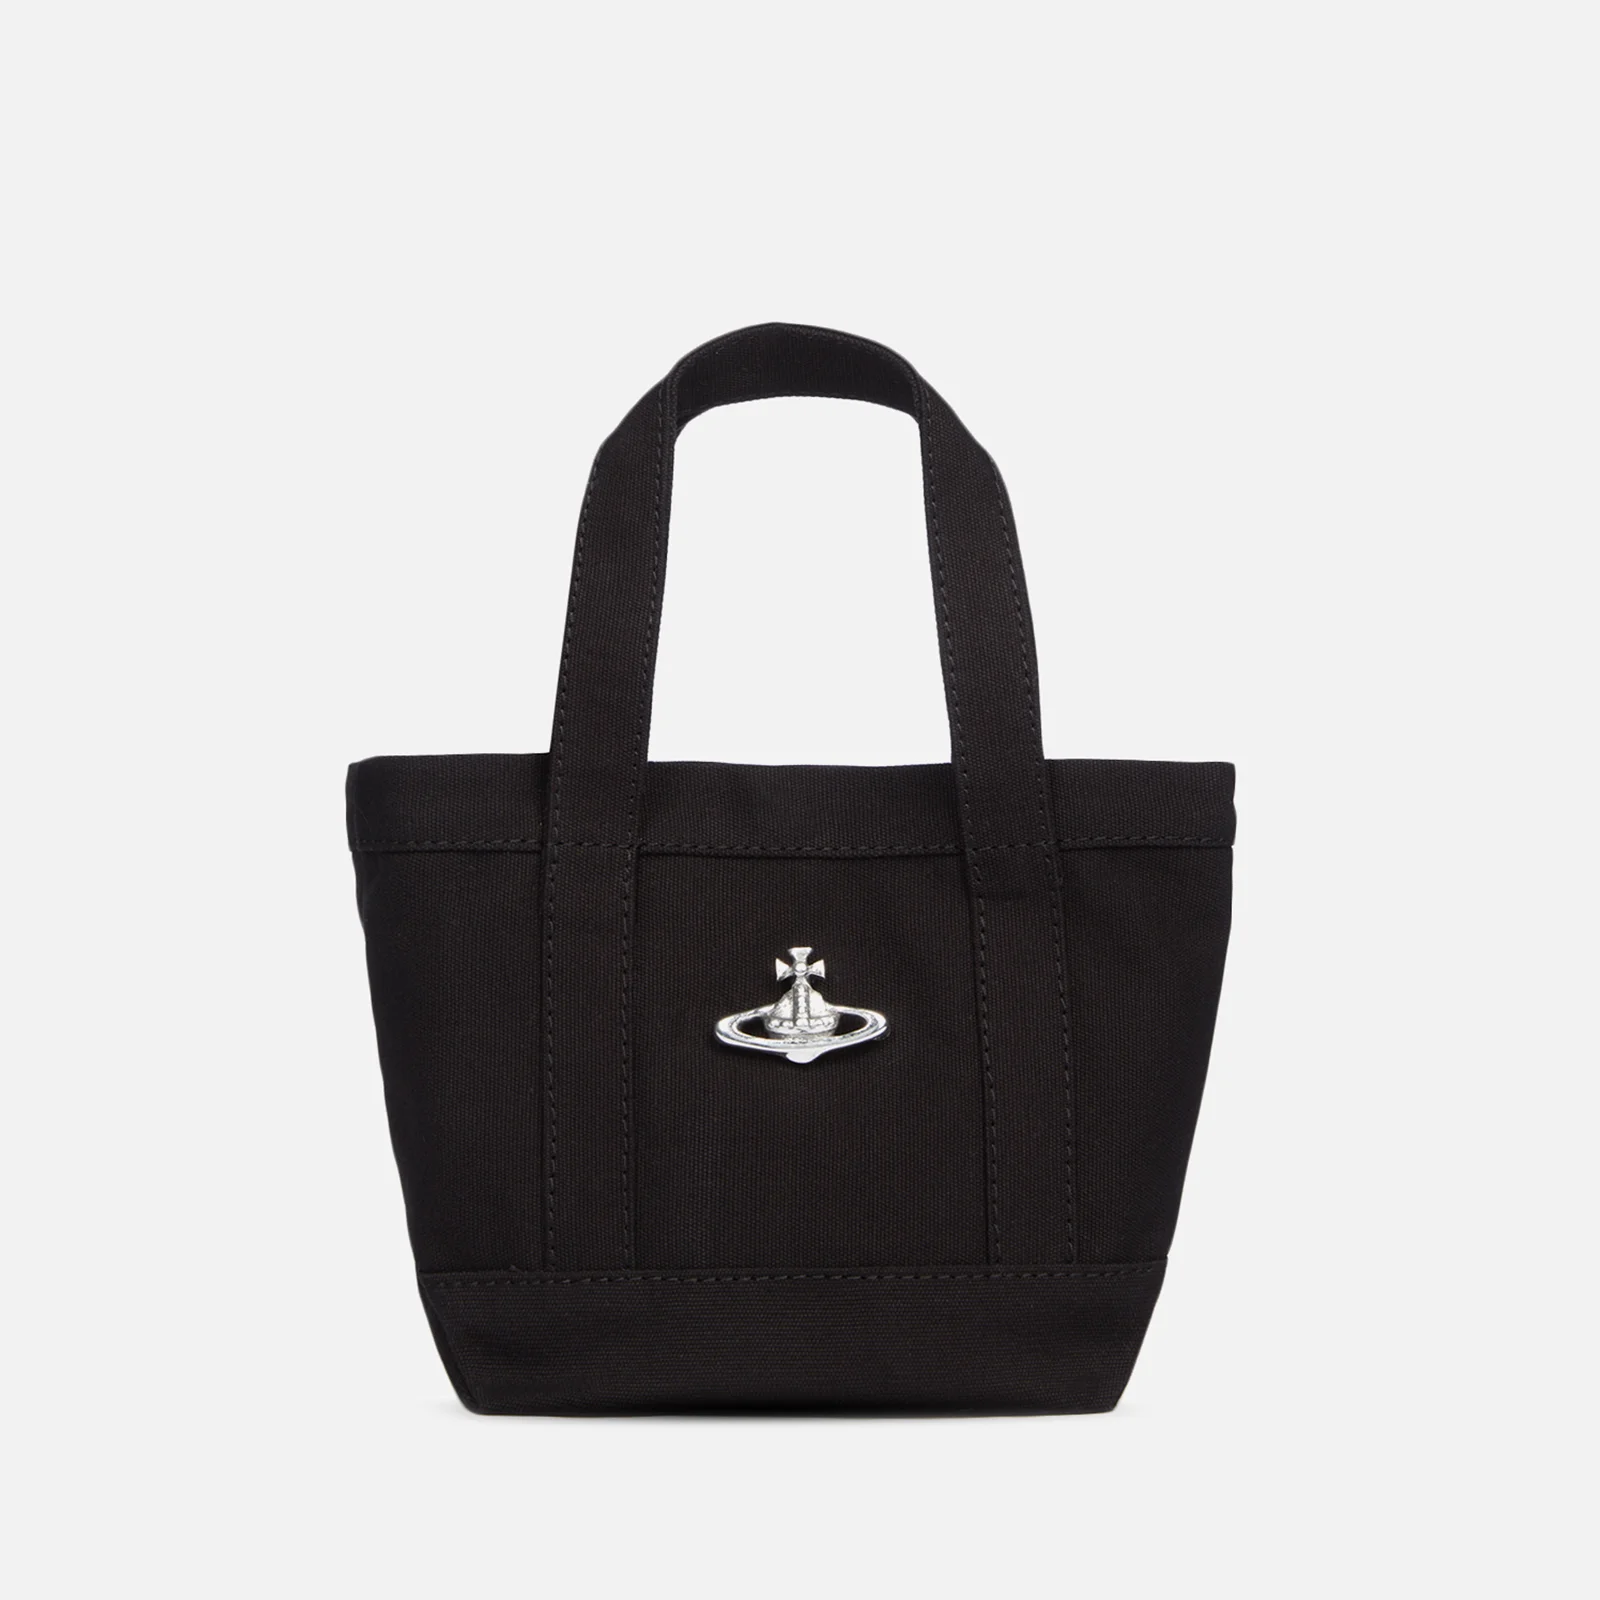 Vivienne Westwood Women's Utility Mini Shopper Bag - Black Image 1